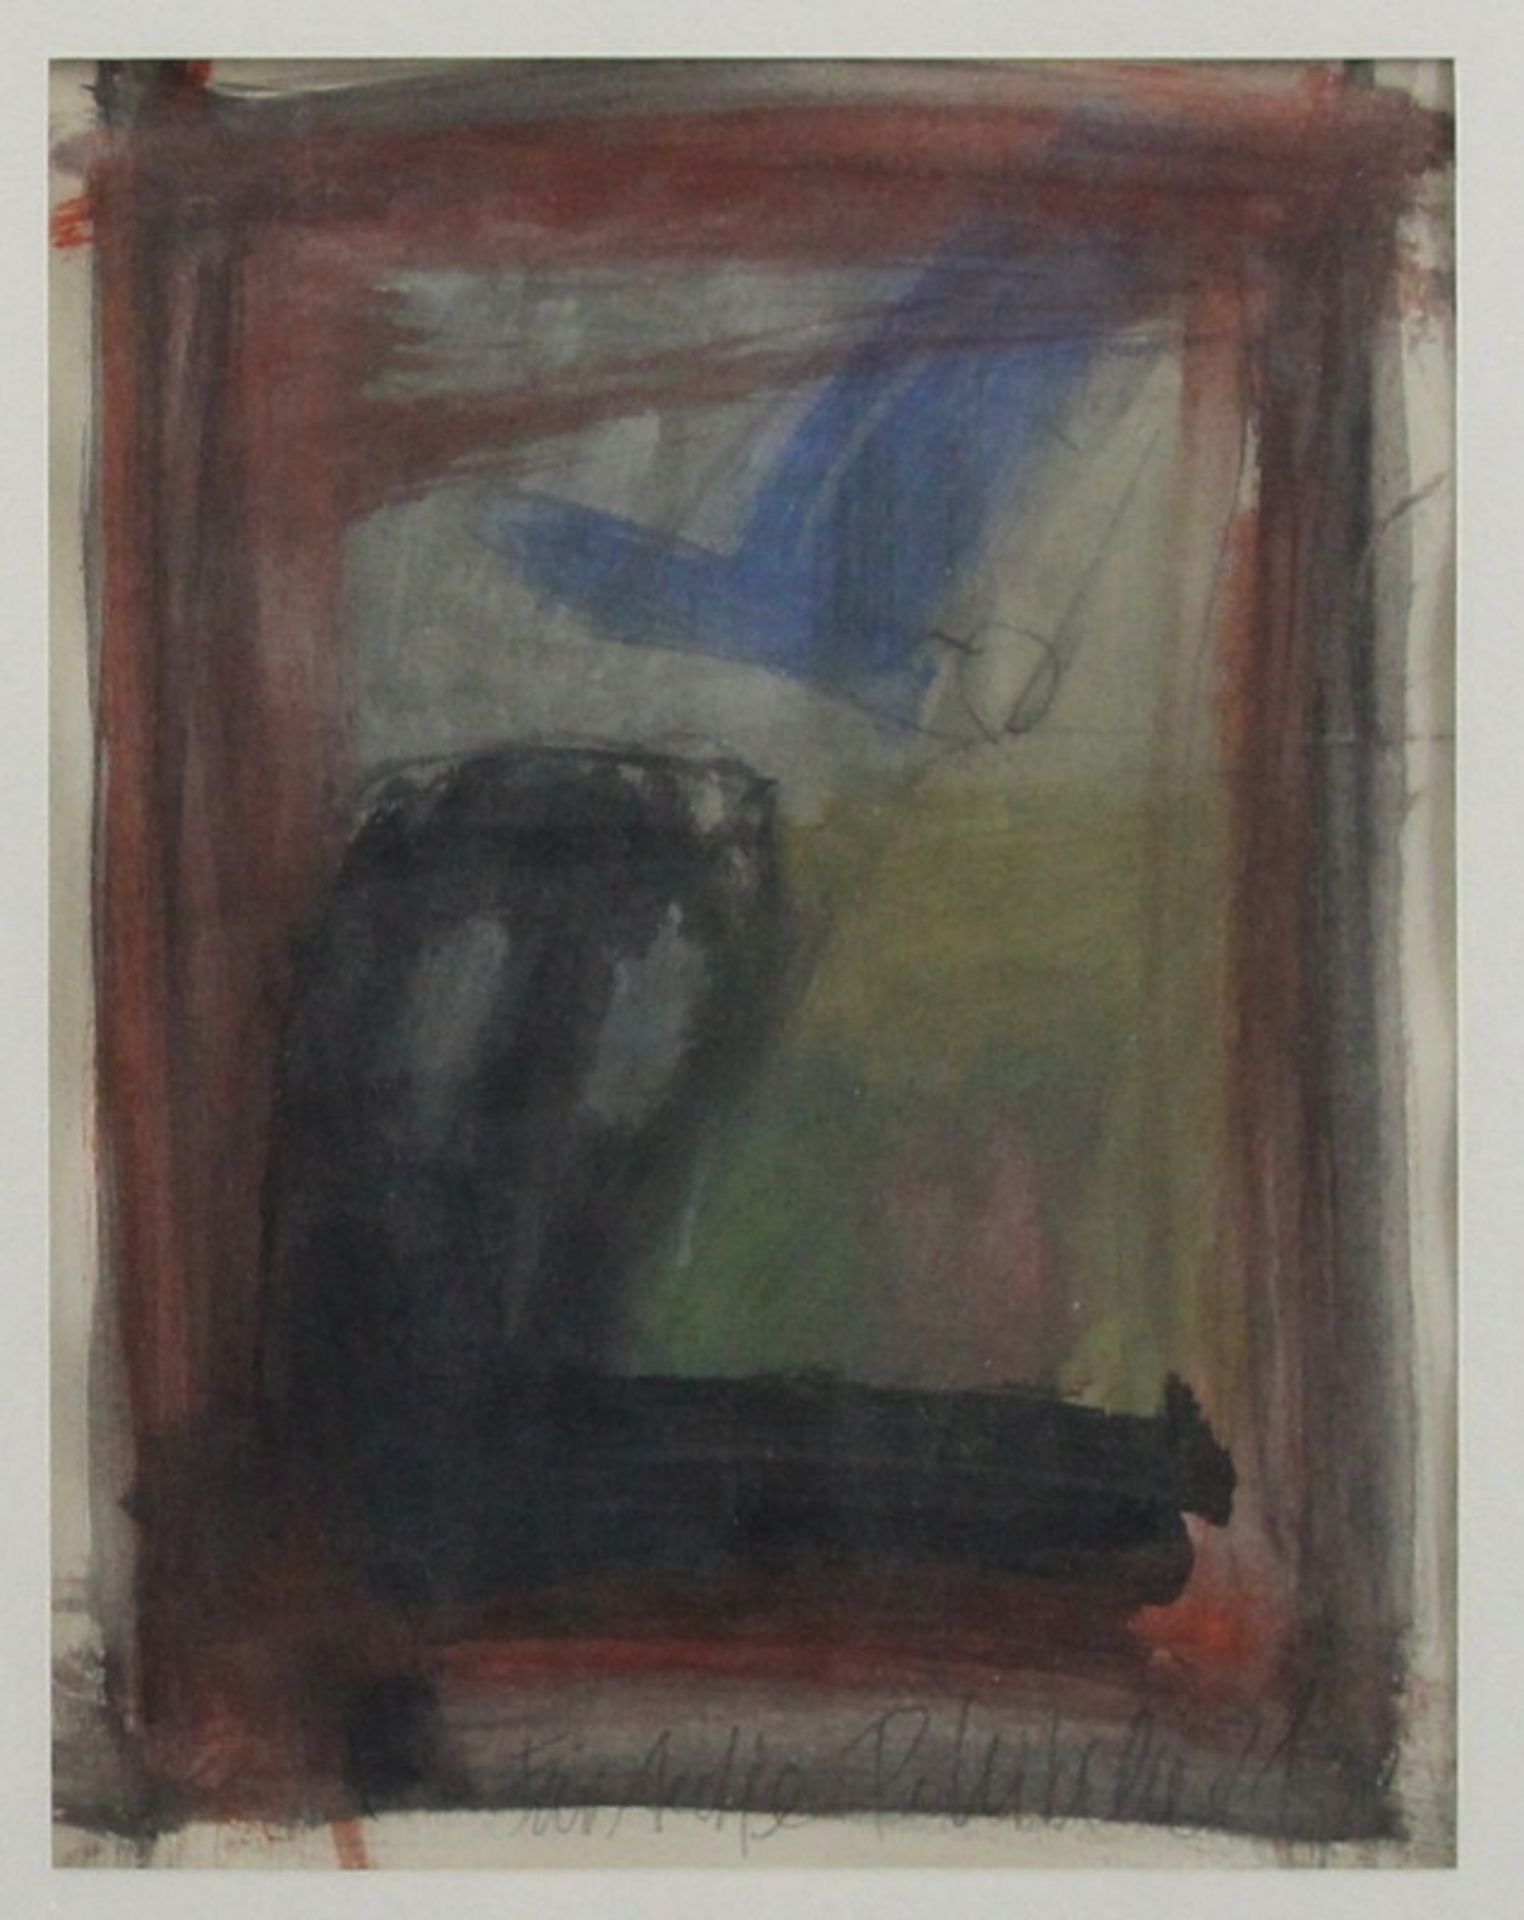 Zeitgenössischer Maler (20.Jhd.) - Aquarell/Papier, "Ohne Titel", (19)81 , signiert, datiert und mit - Bild 2 aus 3